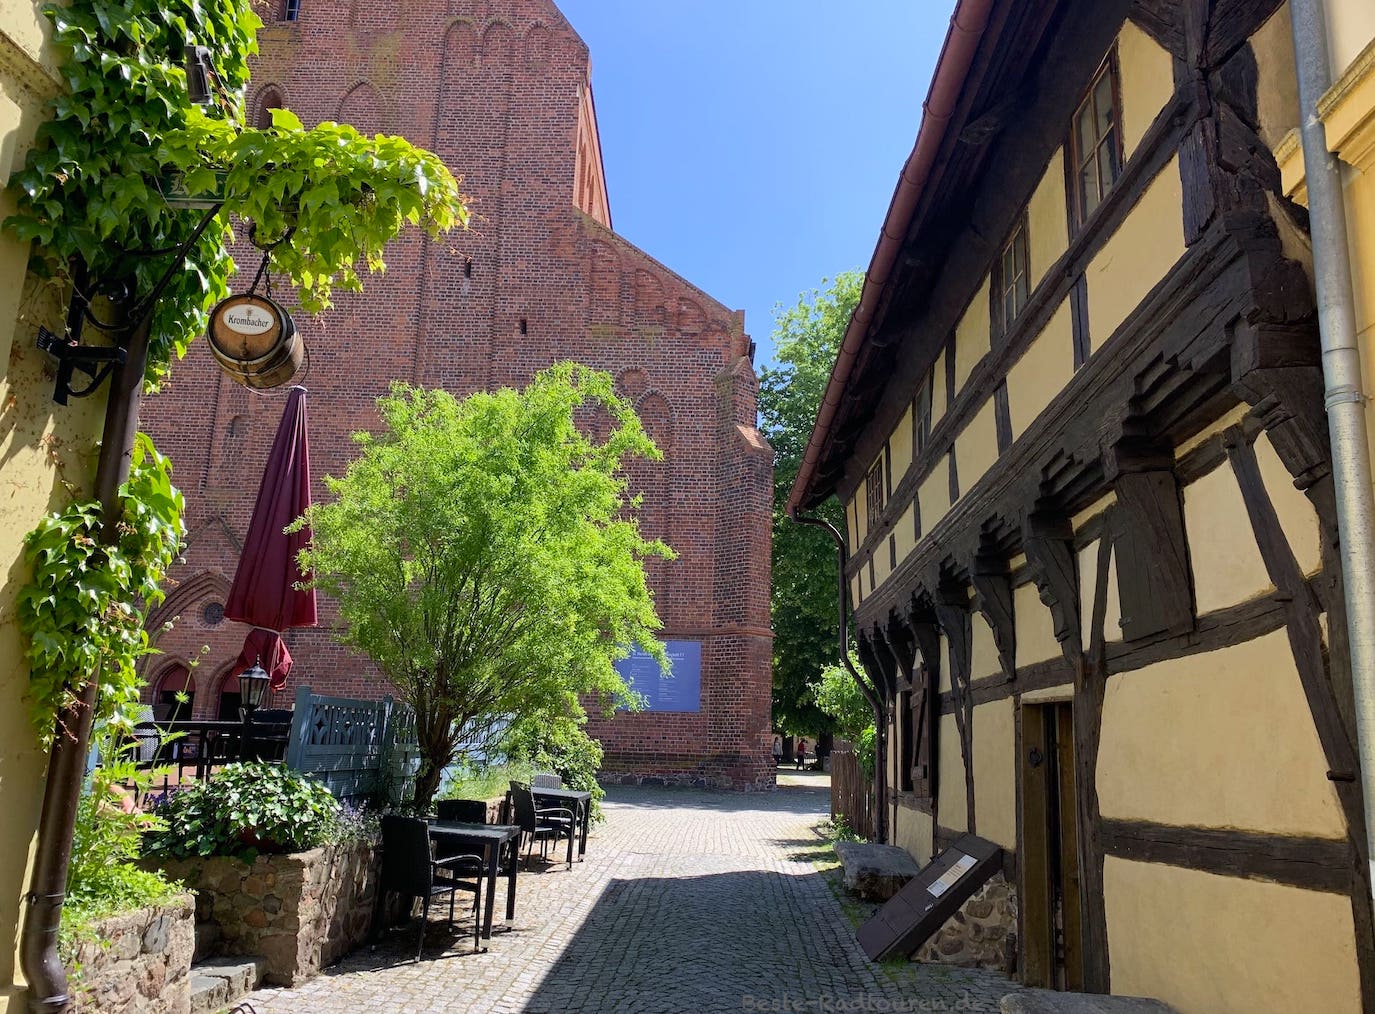 Foto im Zentrum von Beeskow: Kirchgasse, Lokal, St.-Marien-Kirche, ältestes Haus